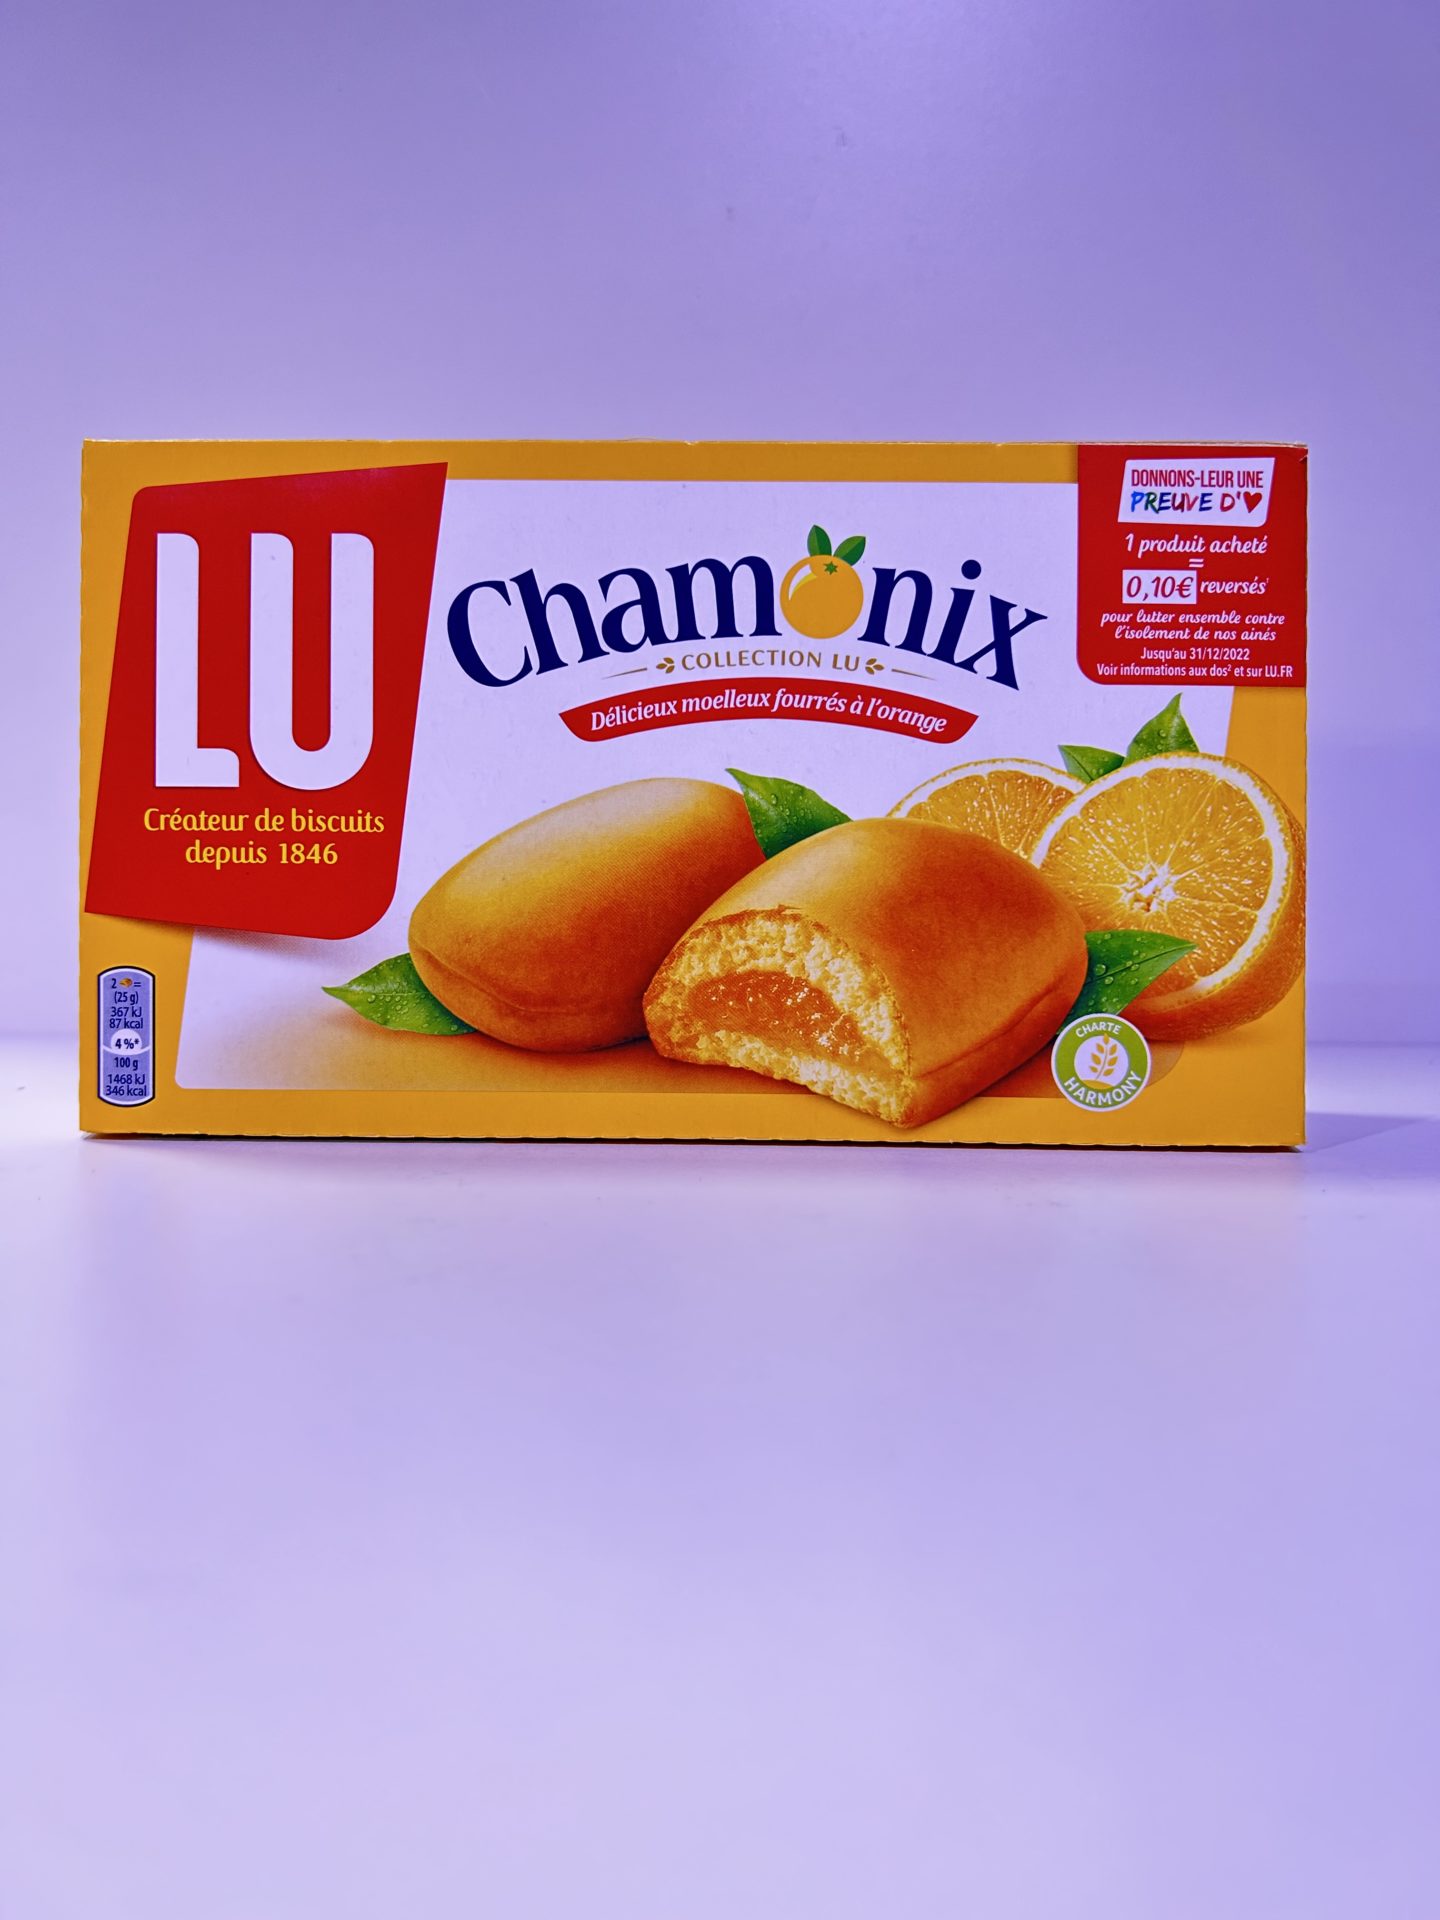 Achat de Chamonix à l'orange en livraison partout dans le monde